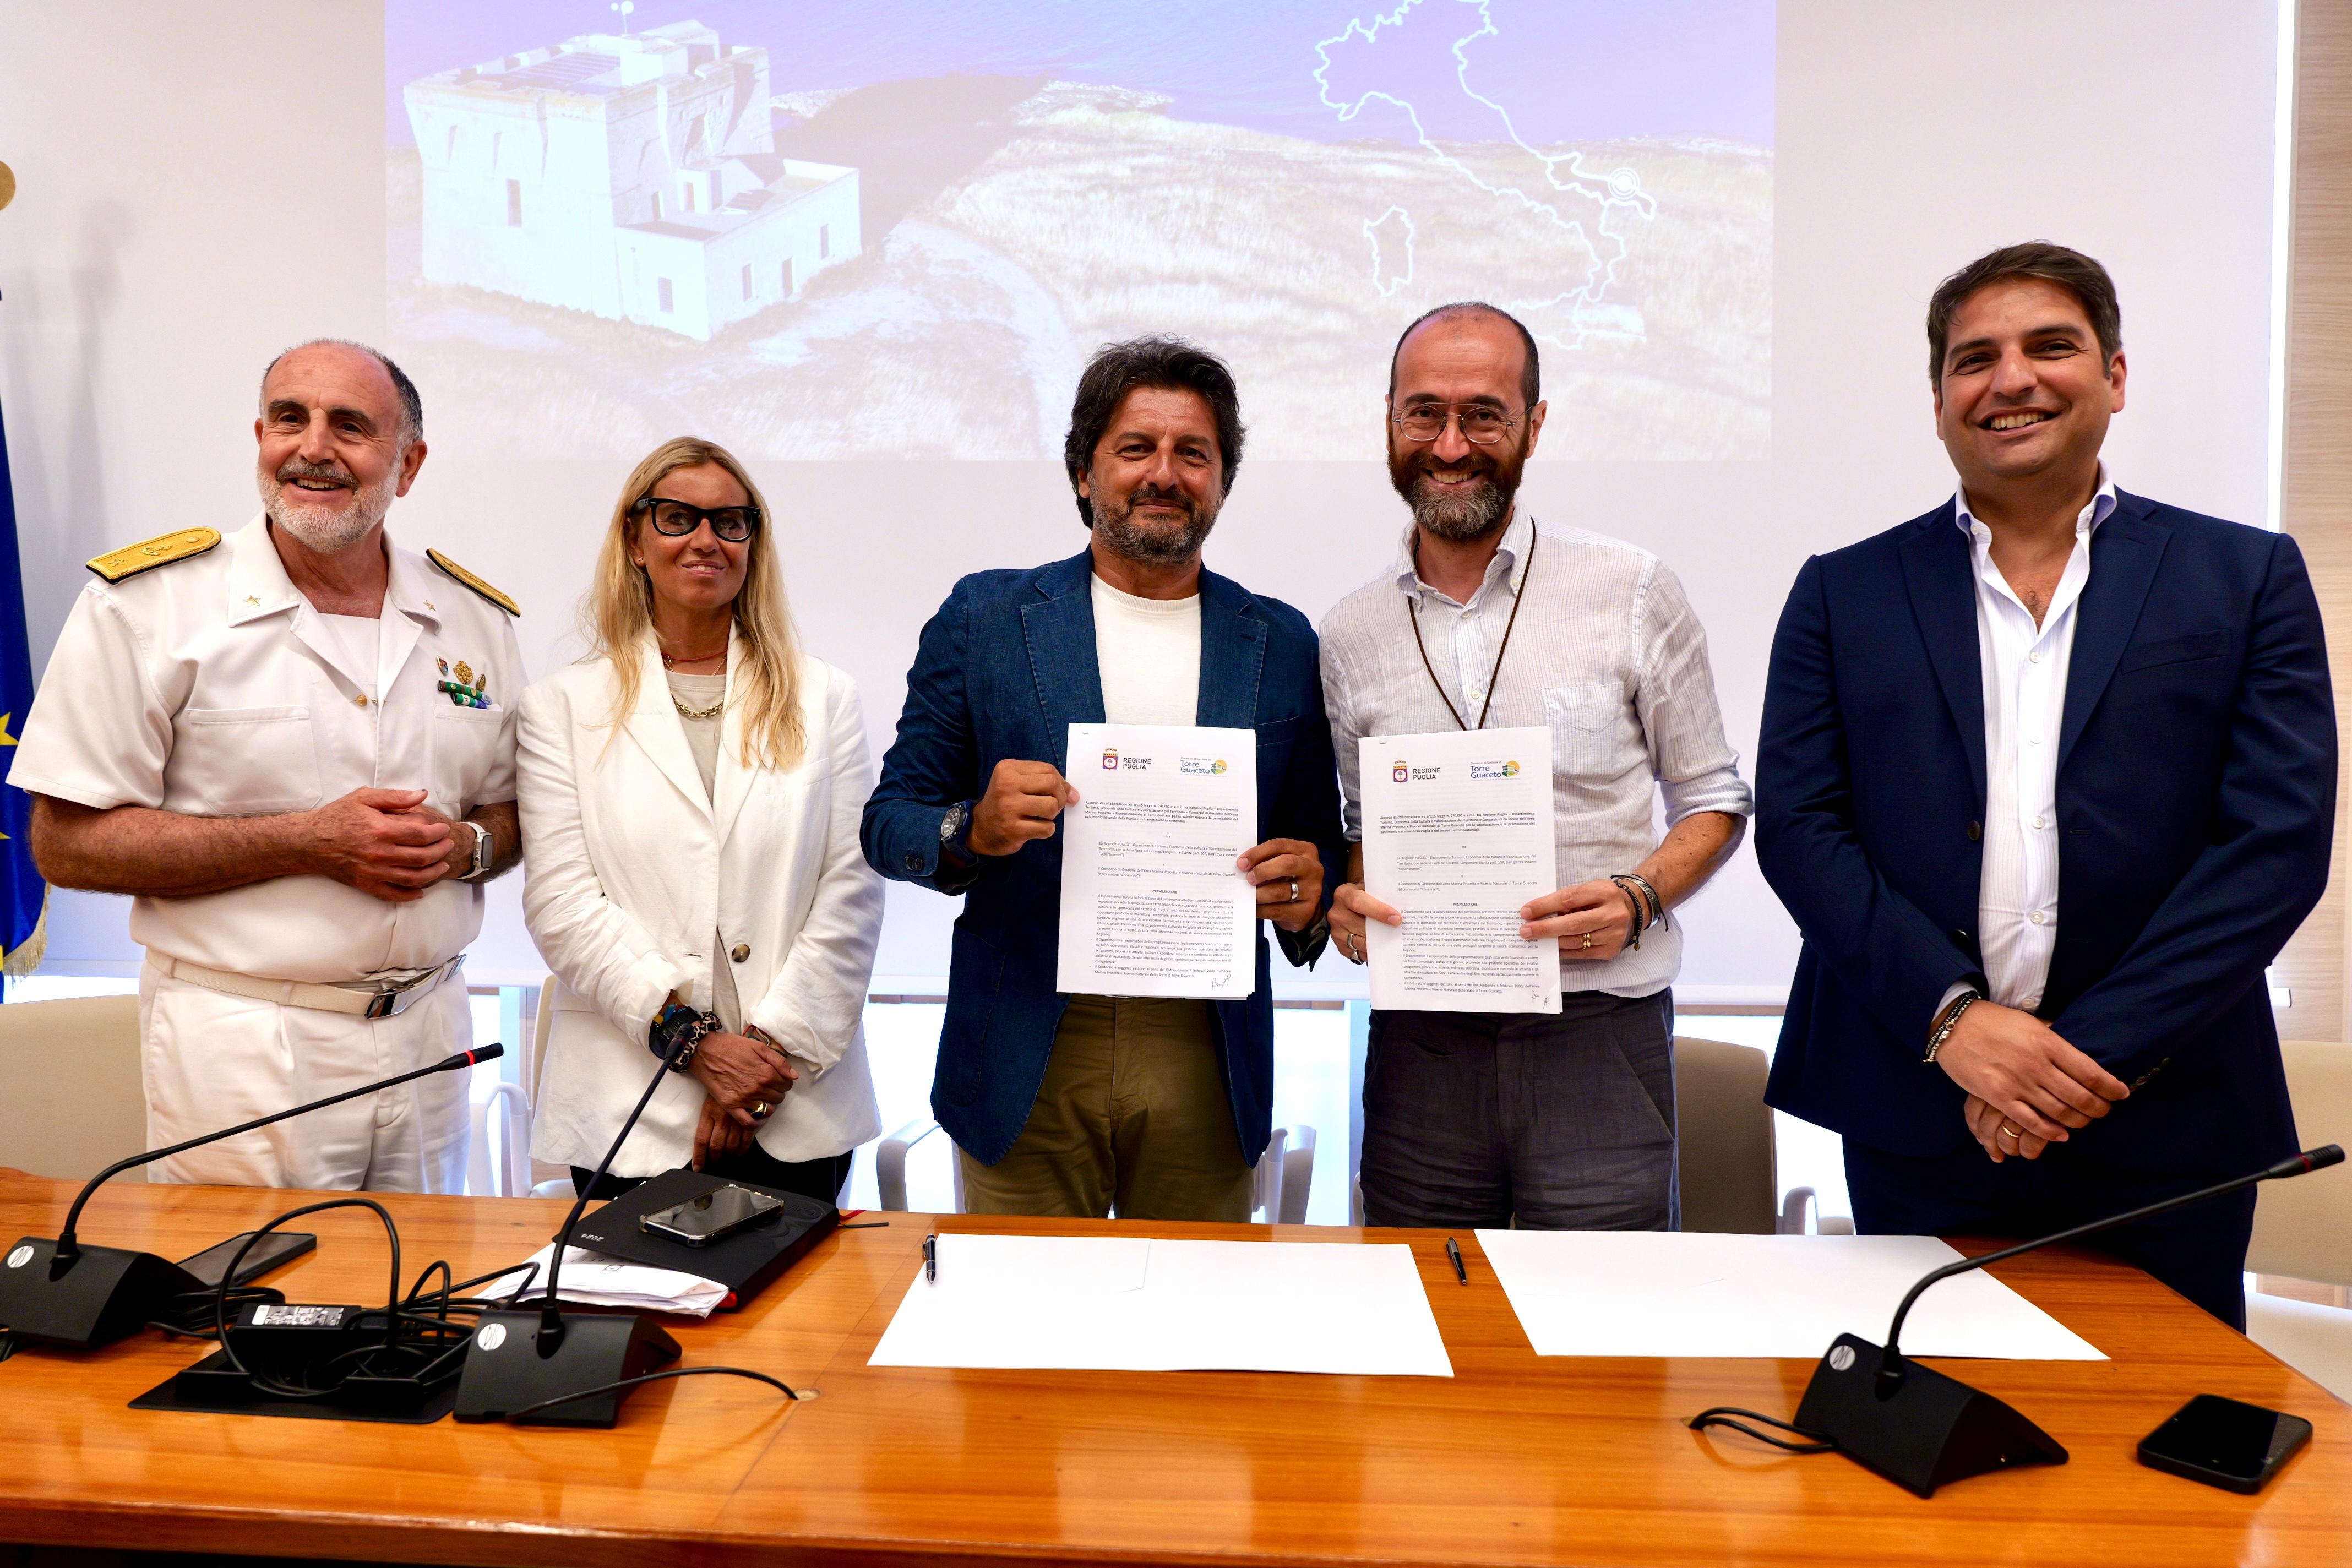 Galleria Regione Puglia e Consorzio di Torre Guaceto insieme per la promozione del turismo sostenibile - Diapositiva 5 di 9